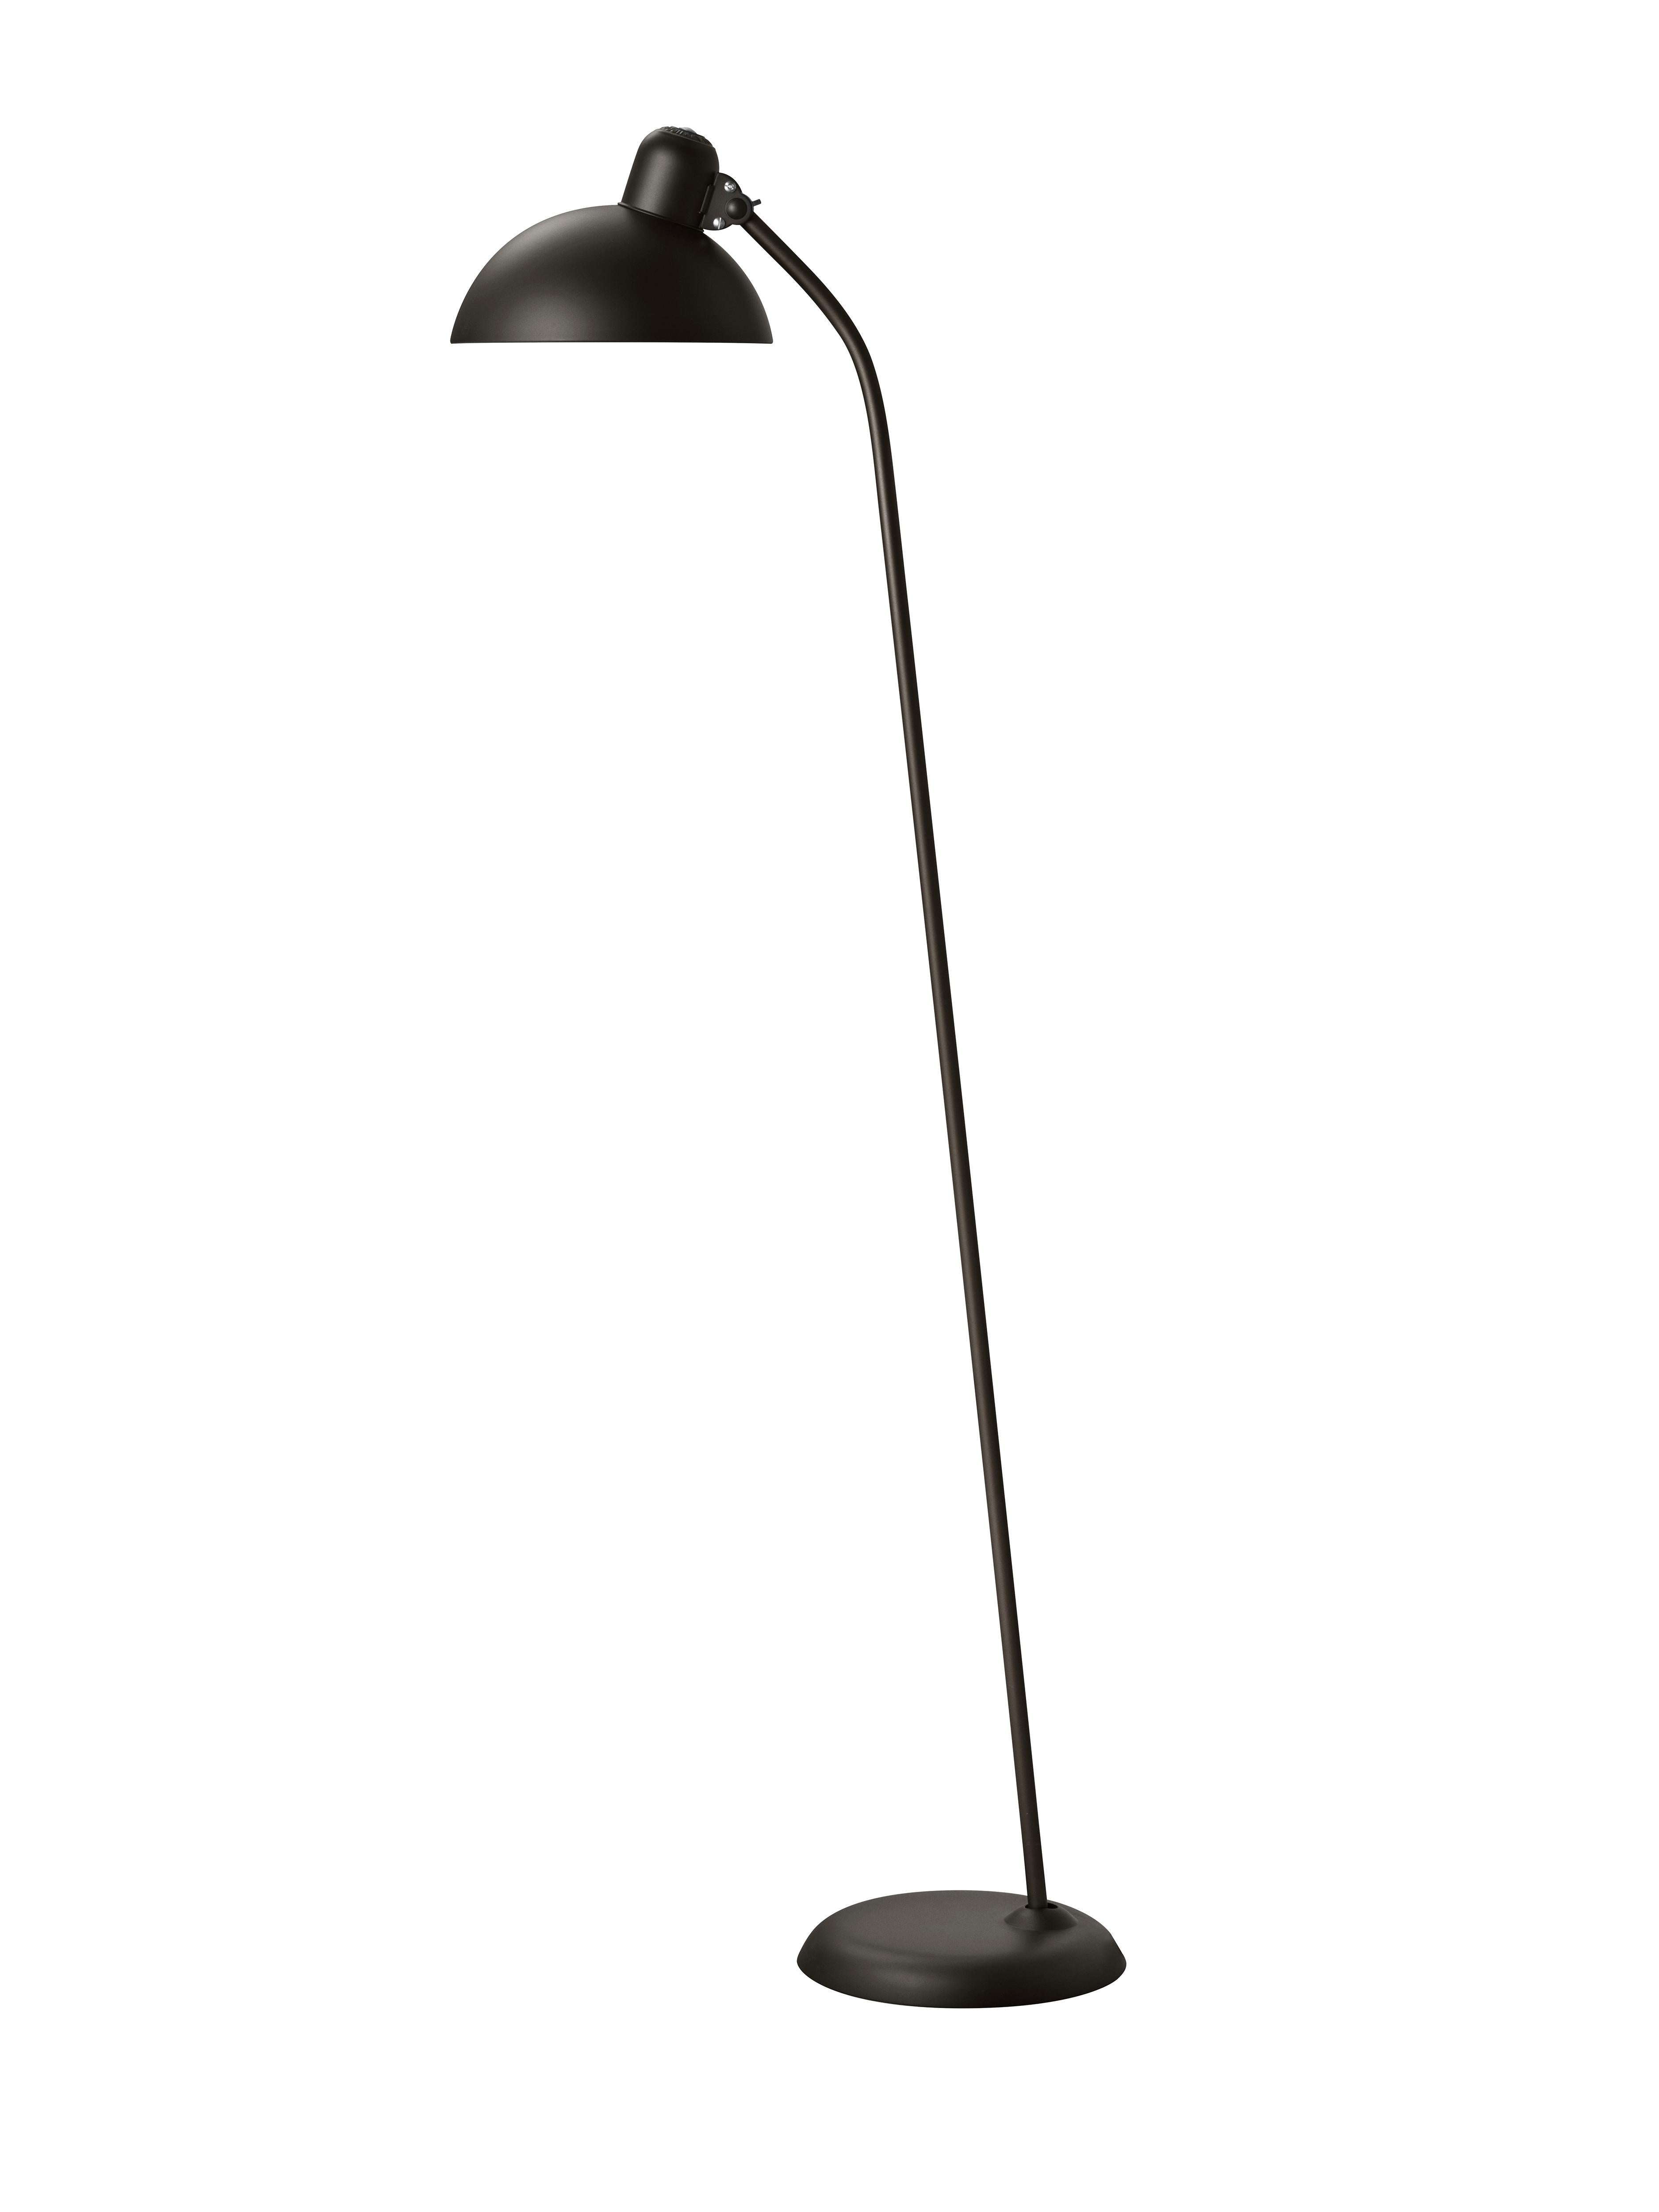 Metal Christian Dell 'Kaiser Idell 6556-F' Floor Lamp for Fritz Hansen in Matte Black For Sale